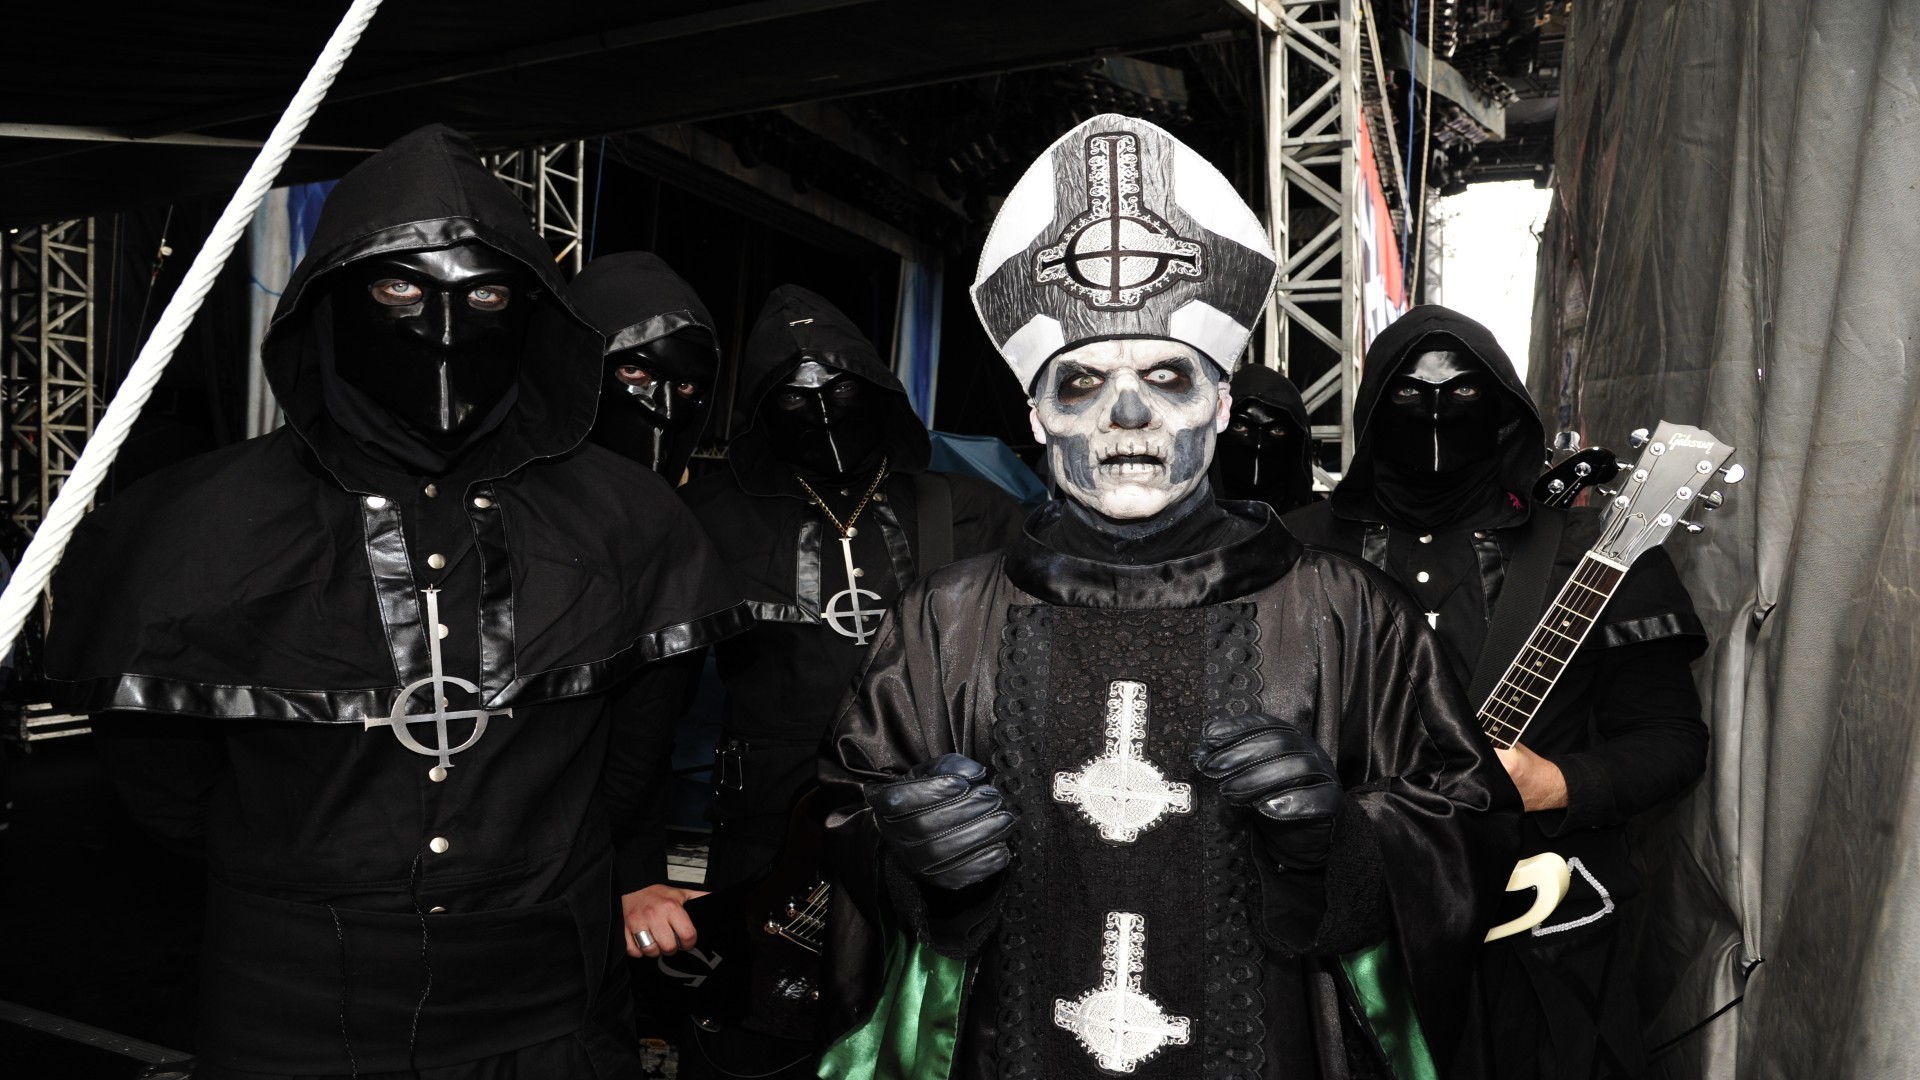 heavy metal bands tapeten,maske,maske,kostüm,persönliche schutzausrüstung,erfundener charakter